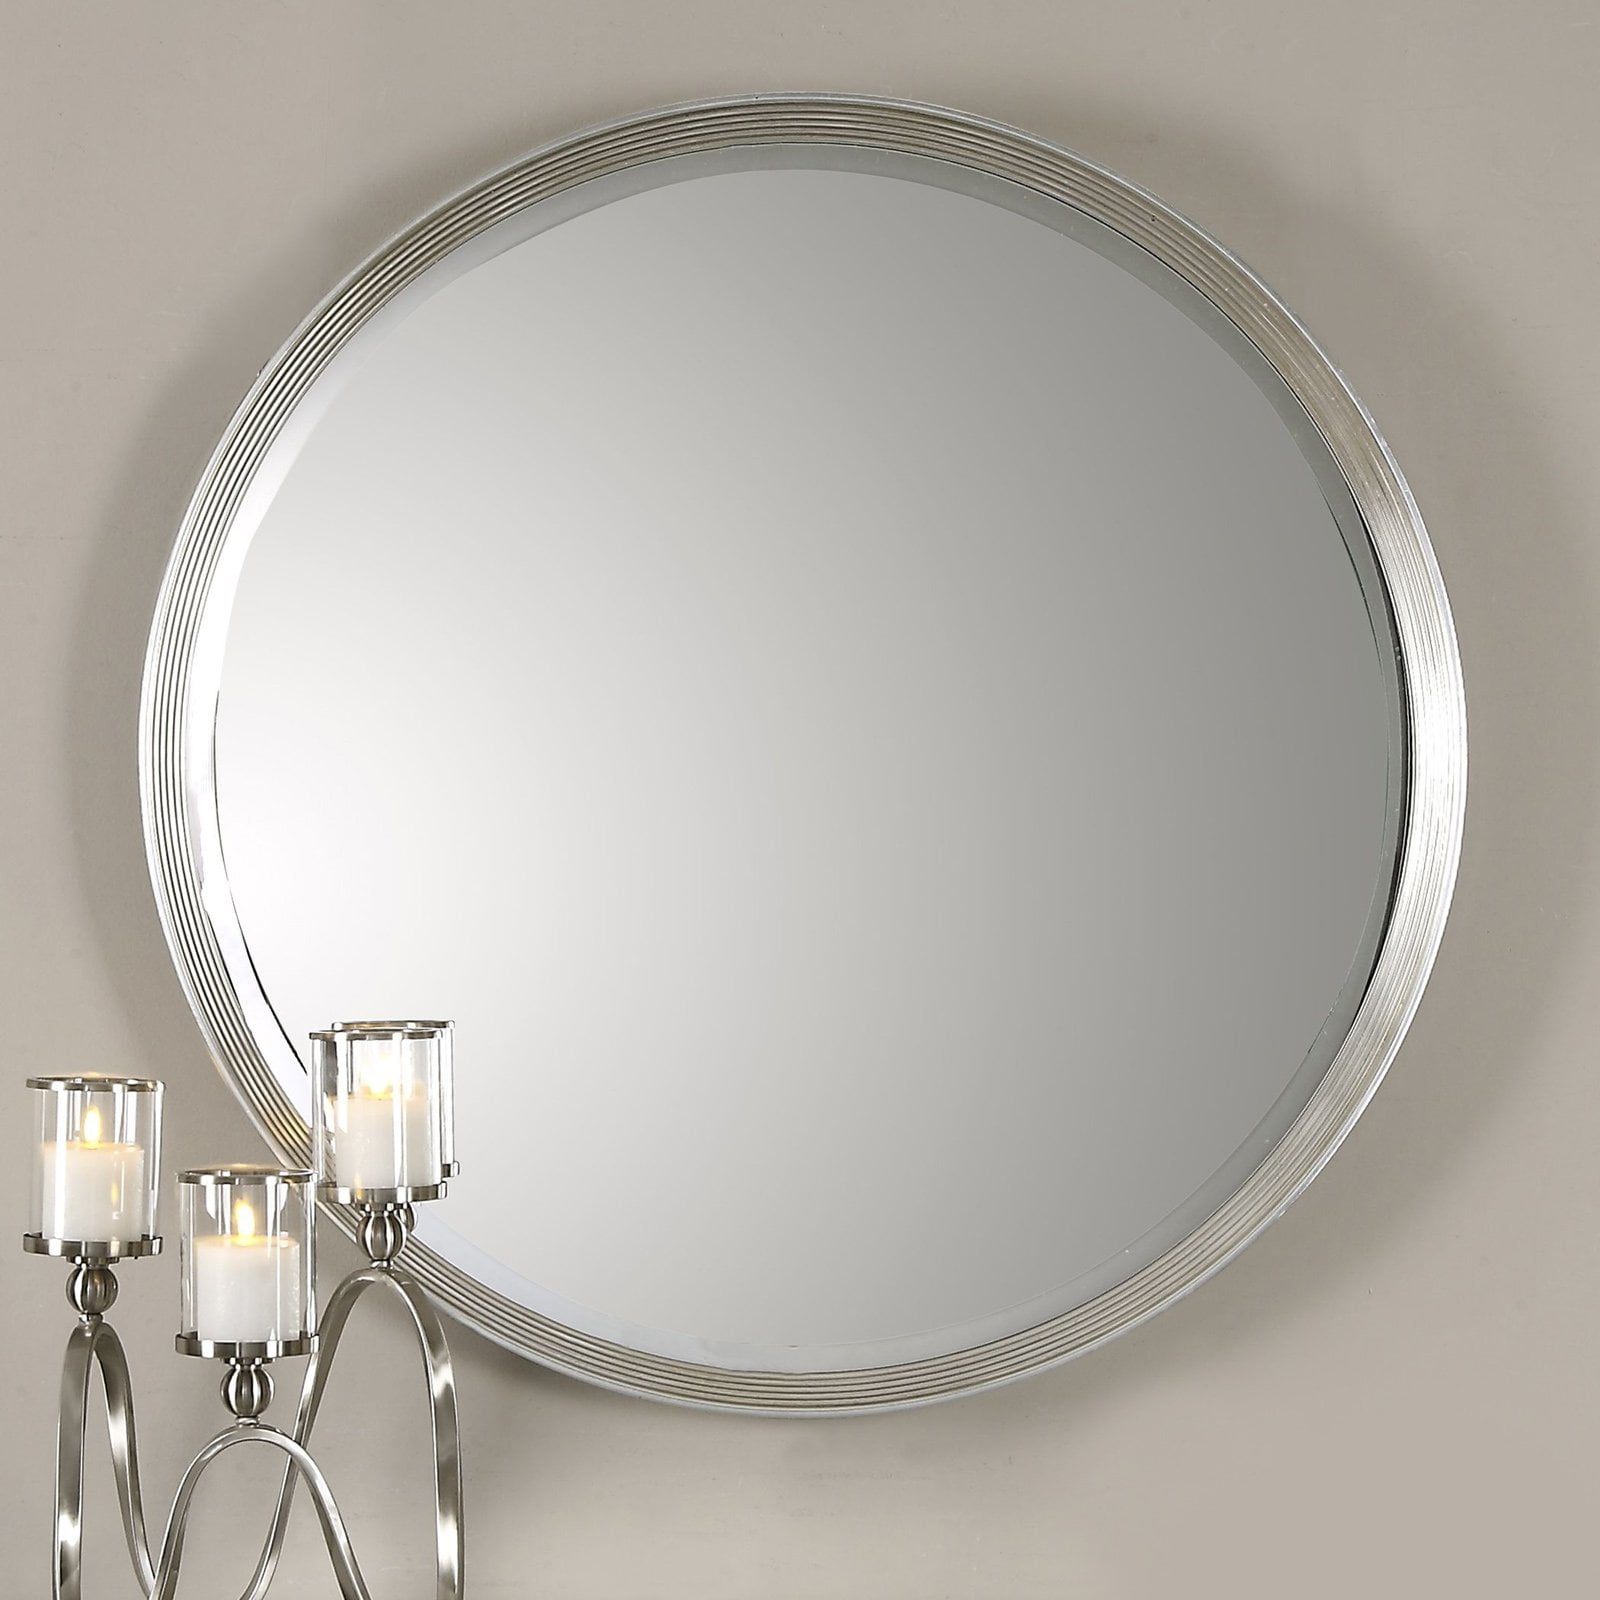 Uttermost Serenza Round Wall Mirror, Uttermost Round Wall Mirrors